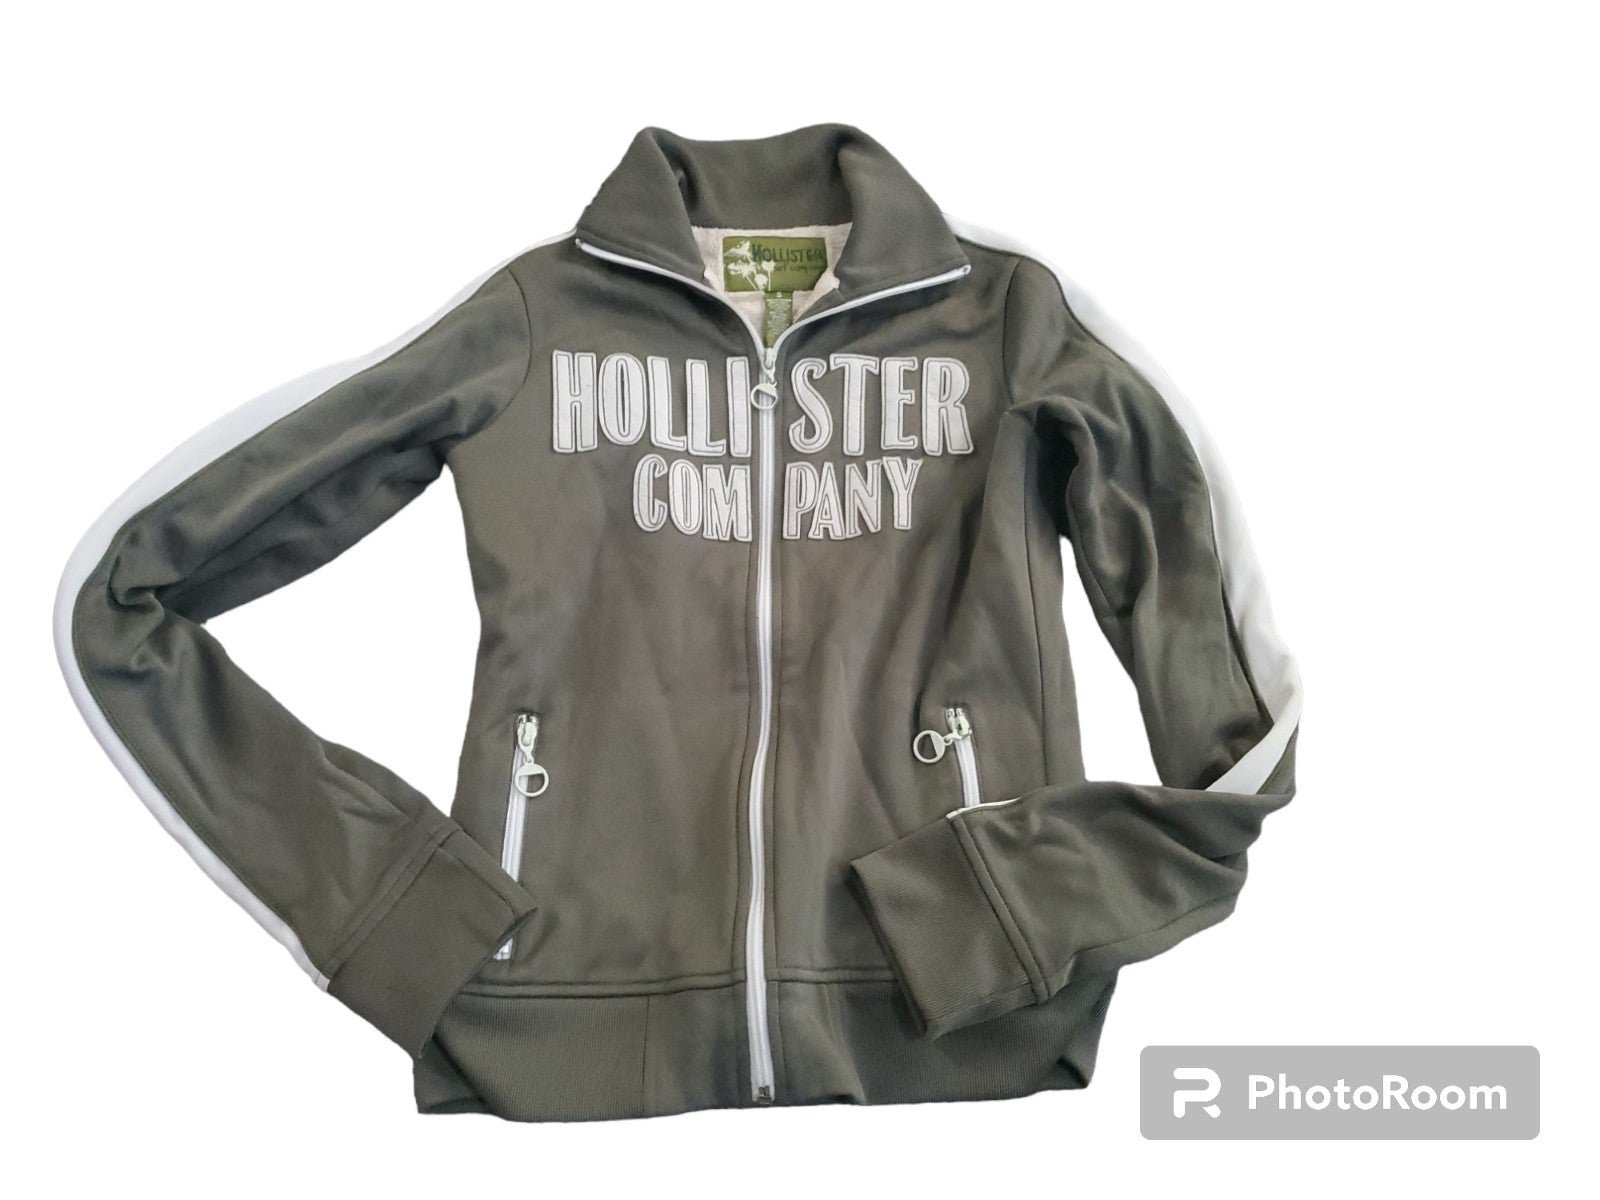 Authentic Hollister vintage zip up green sweatshirt wit